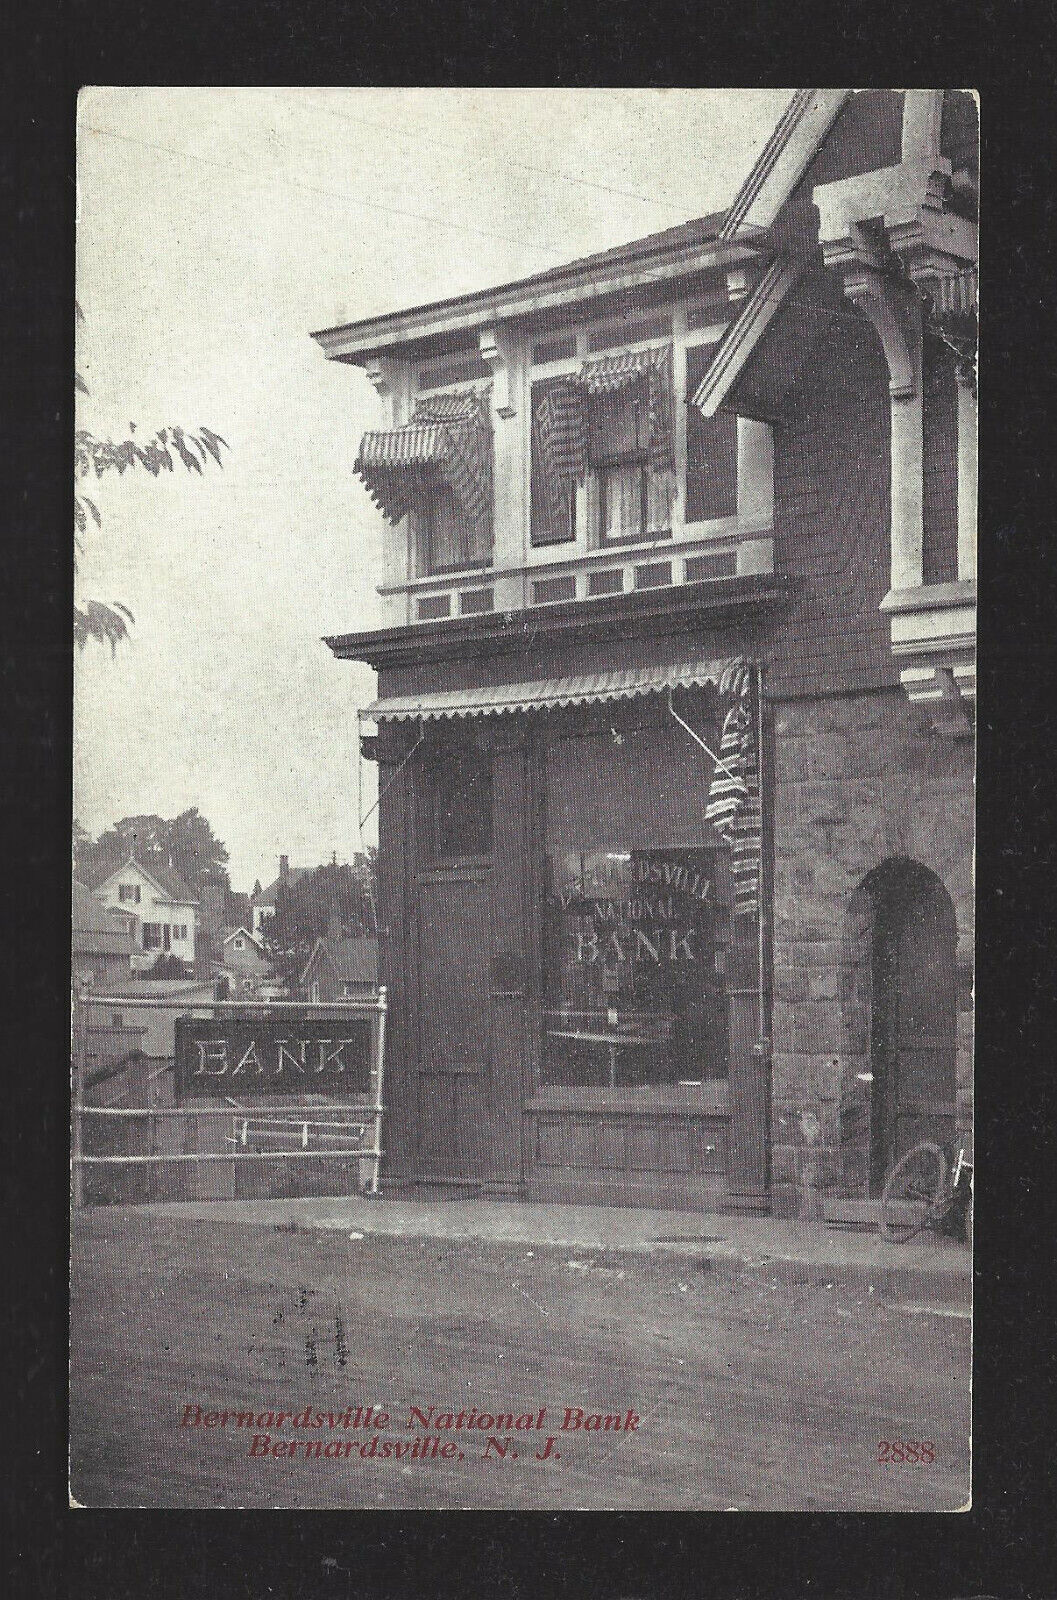 Bernardsville National Bank, Bernardsville, NJ, B&W Post Card, Postmarked 2/9/19